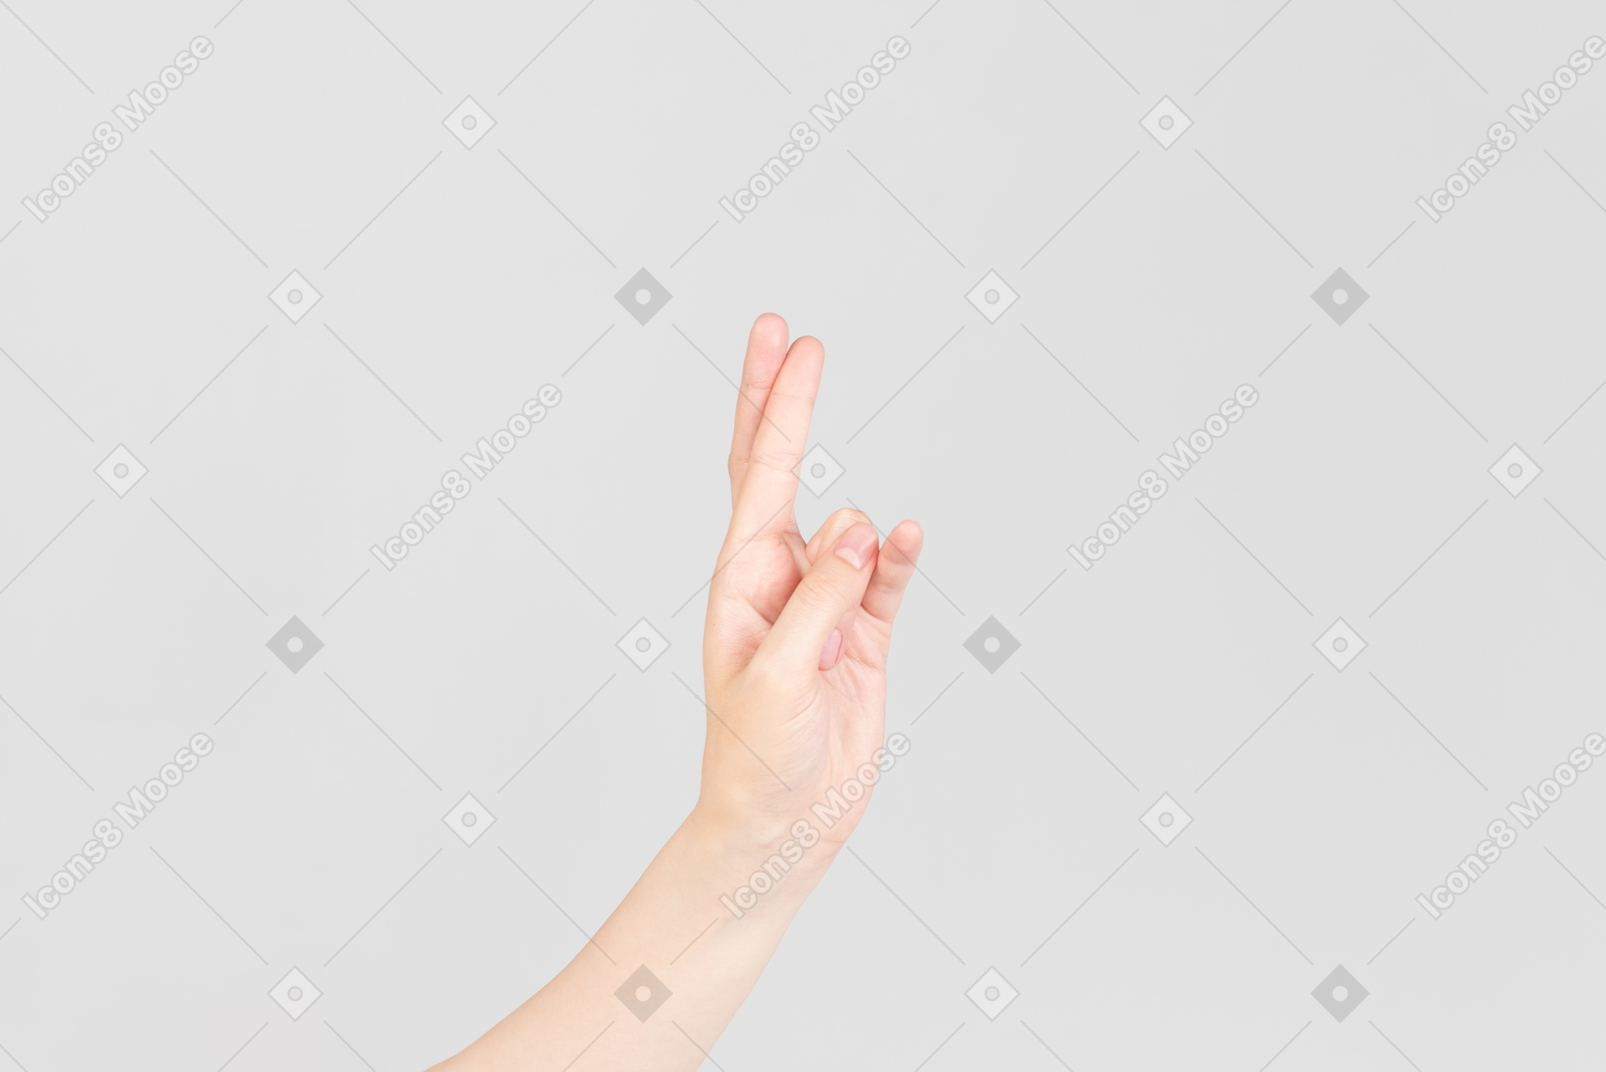 Regard de côté de la main féminine tenant les doigts croisés